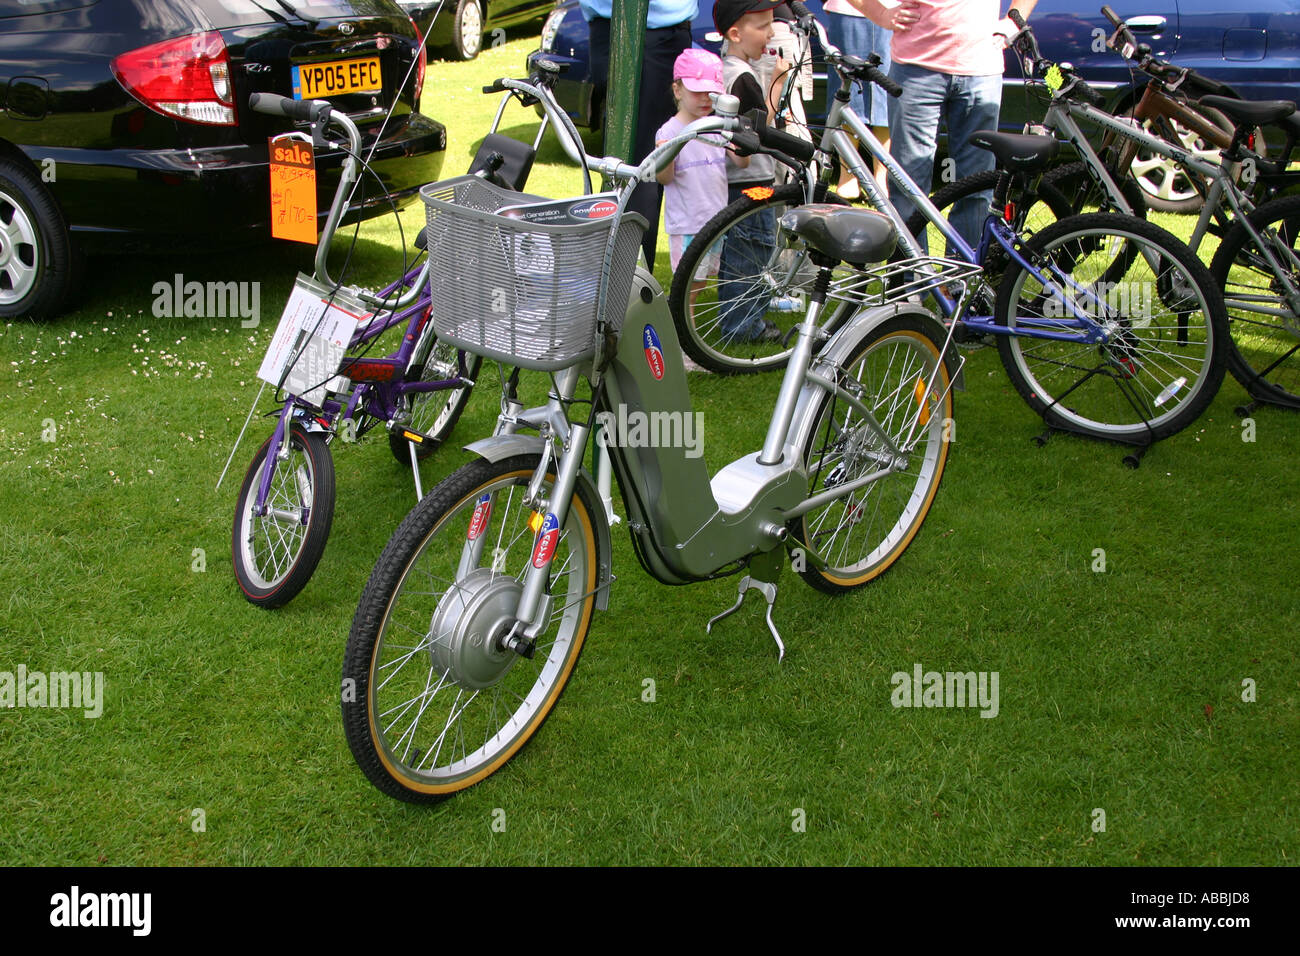 Azionata elettricamente il ciclo del pedale in occasione di una mostra Foto Stock